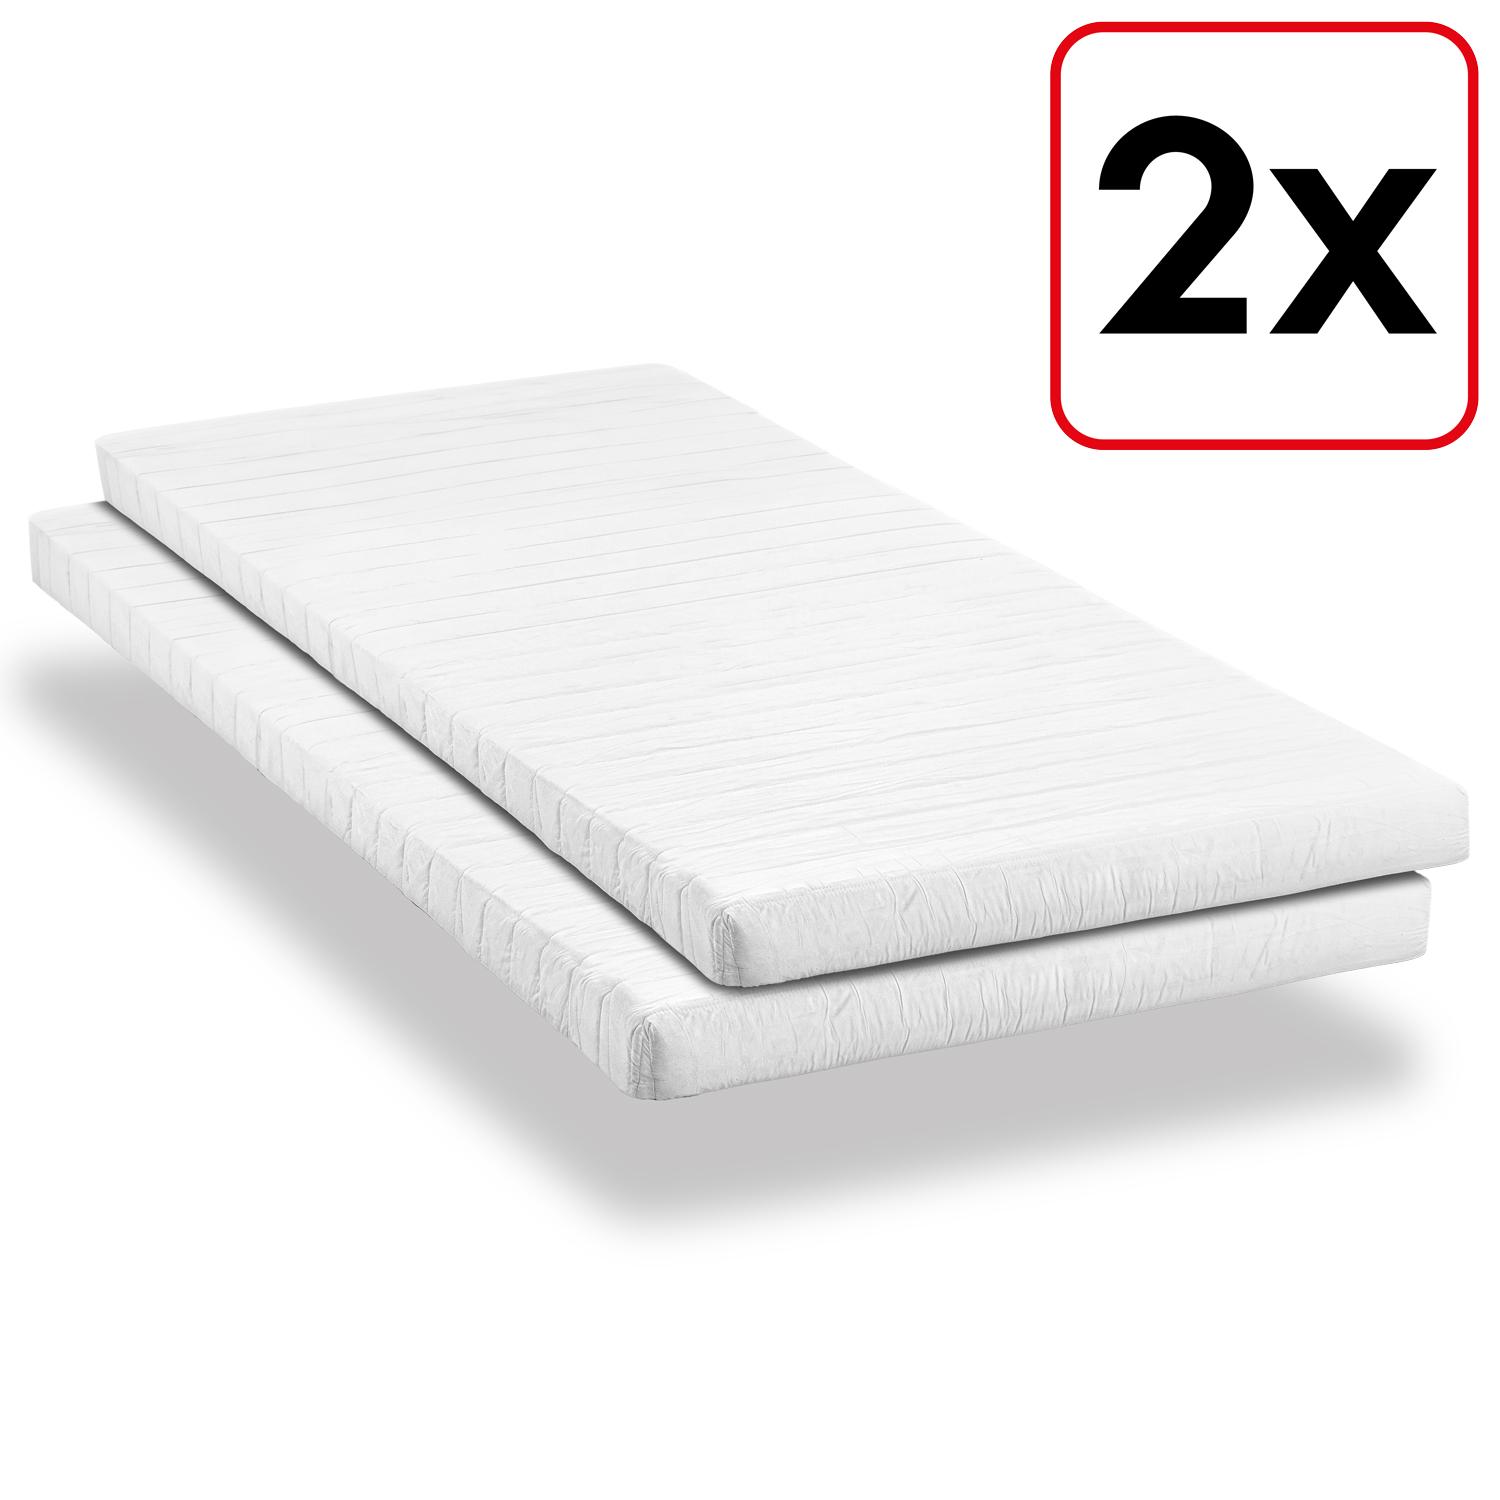 Comfort foam mattress K10 100 x 200 cm, height 10 cm, firmness level H3, twin set